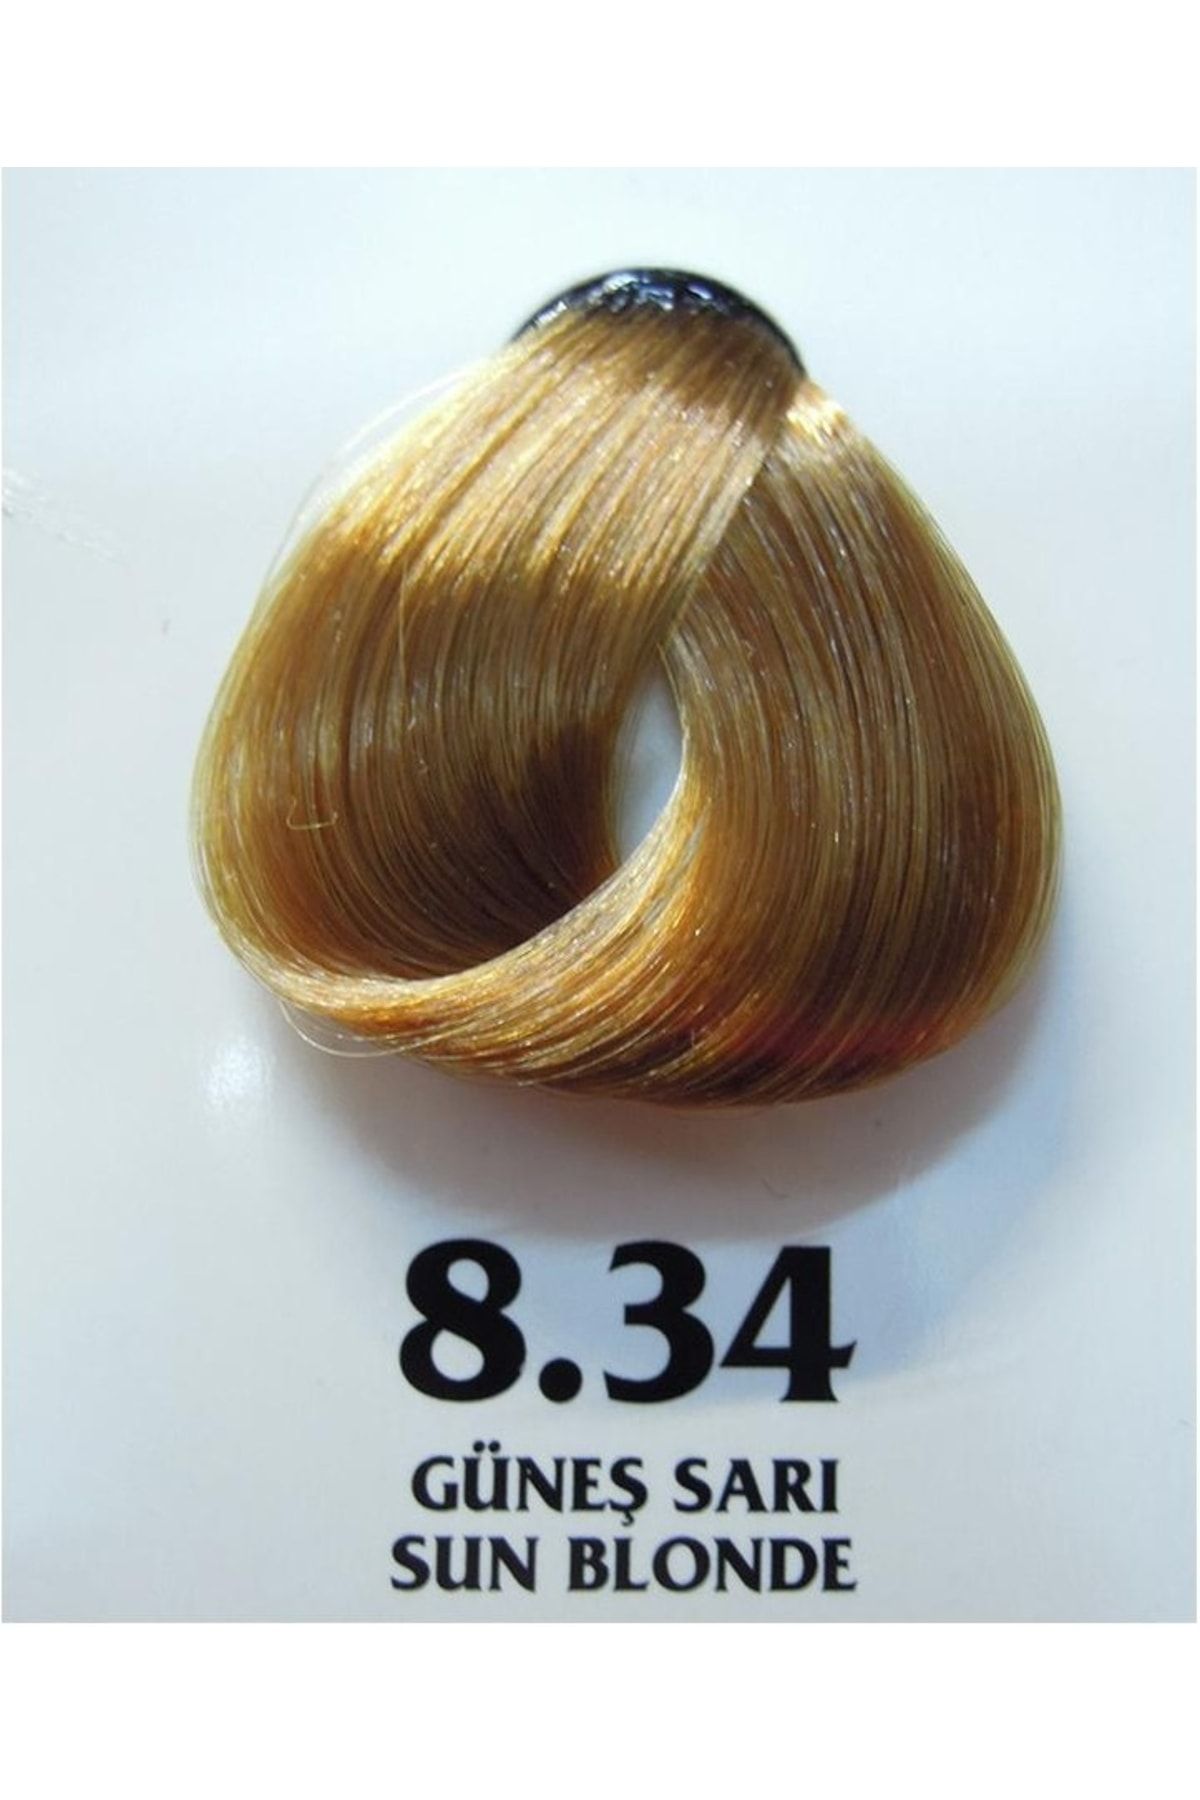 Clemency Farmavita Saç Boyası Güneş Sarı 8.34 60gr.